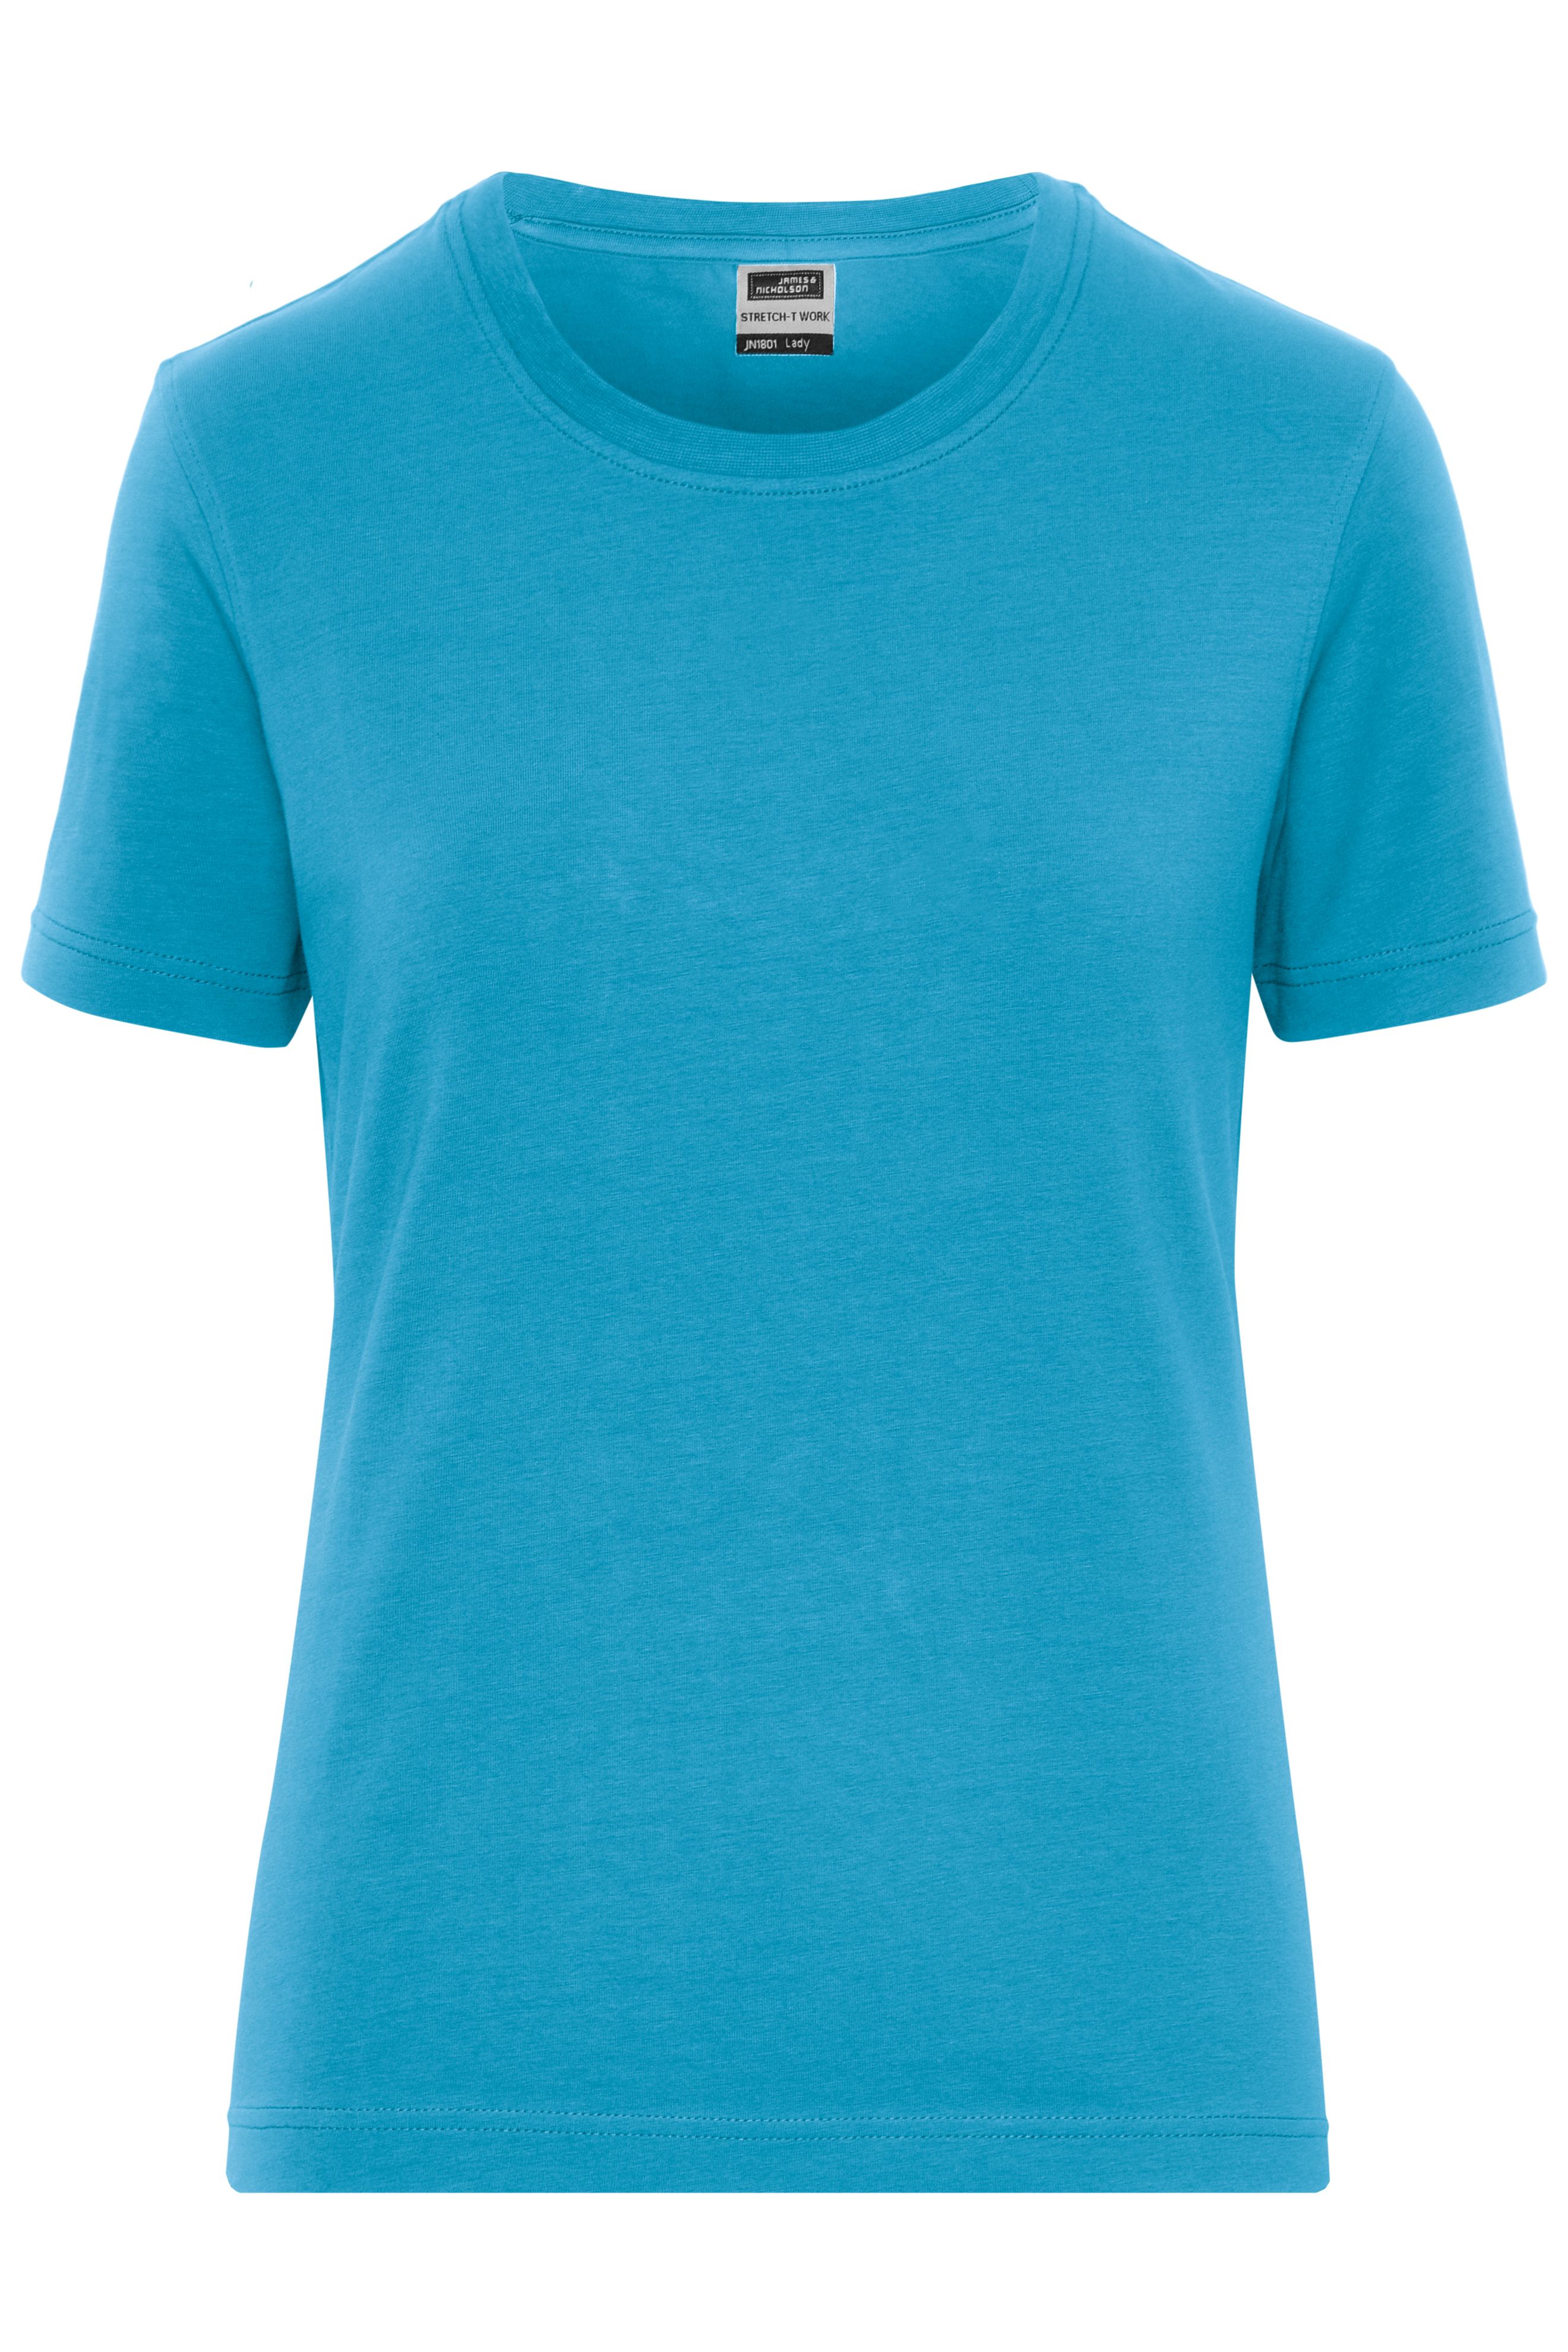 Ladies' BIO Stretch-T Work - SOLID - JN1801 T-Shirt aus weichem Elastic-Single-Jersey